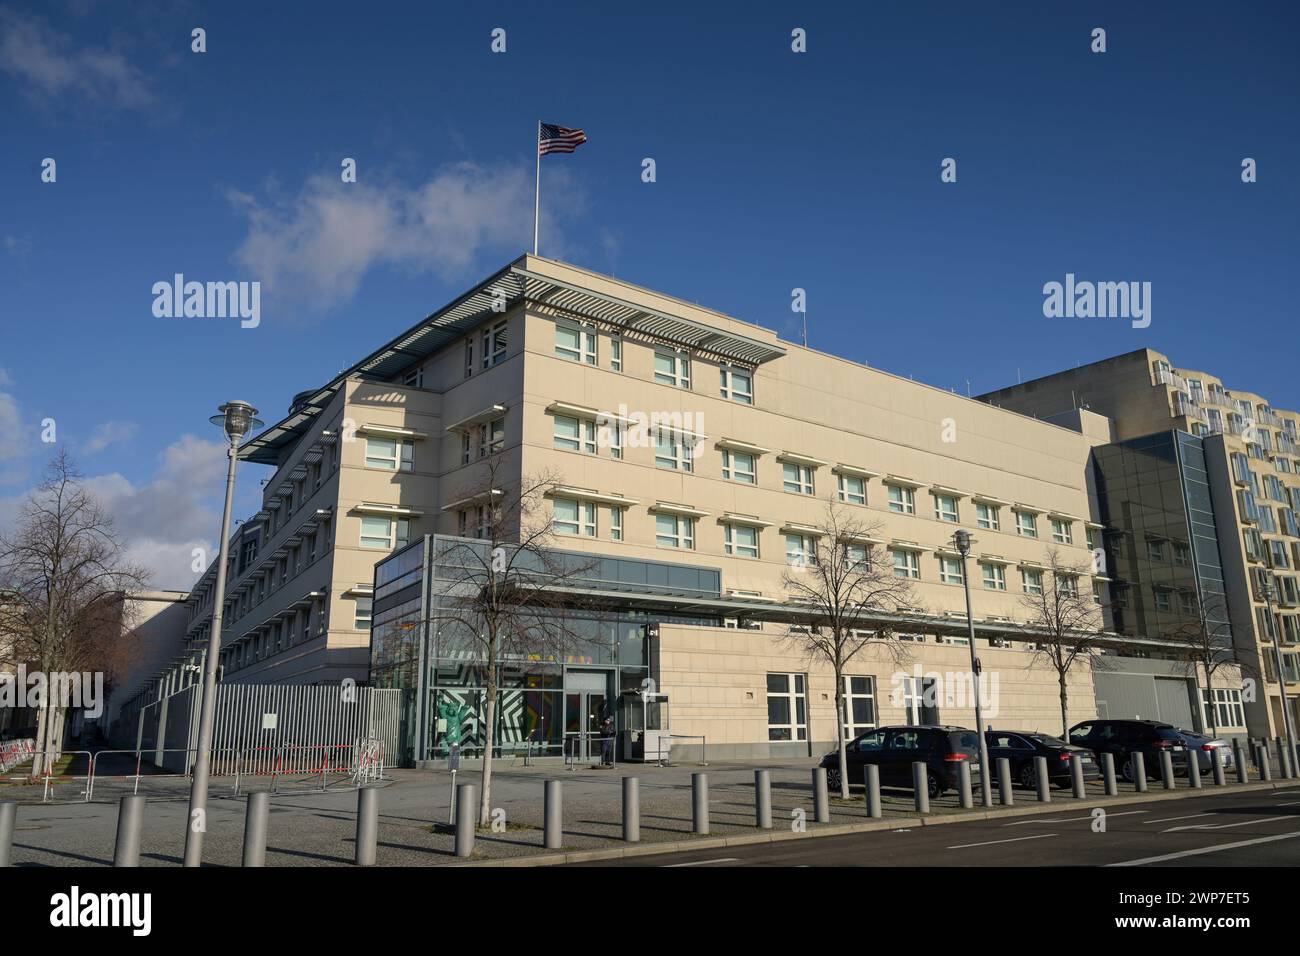 Botschaft der Vereinigten Staaten von Amerika, Ebertstraße, Behrenstraße, Mitte, Berlin Deutschland Banque D'Images